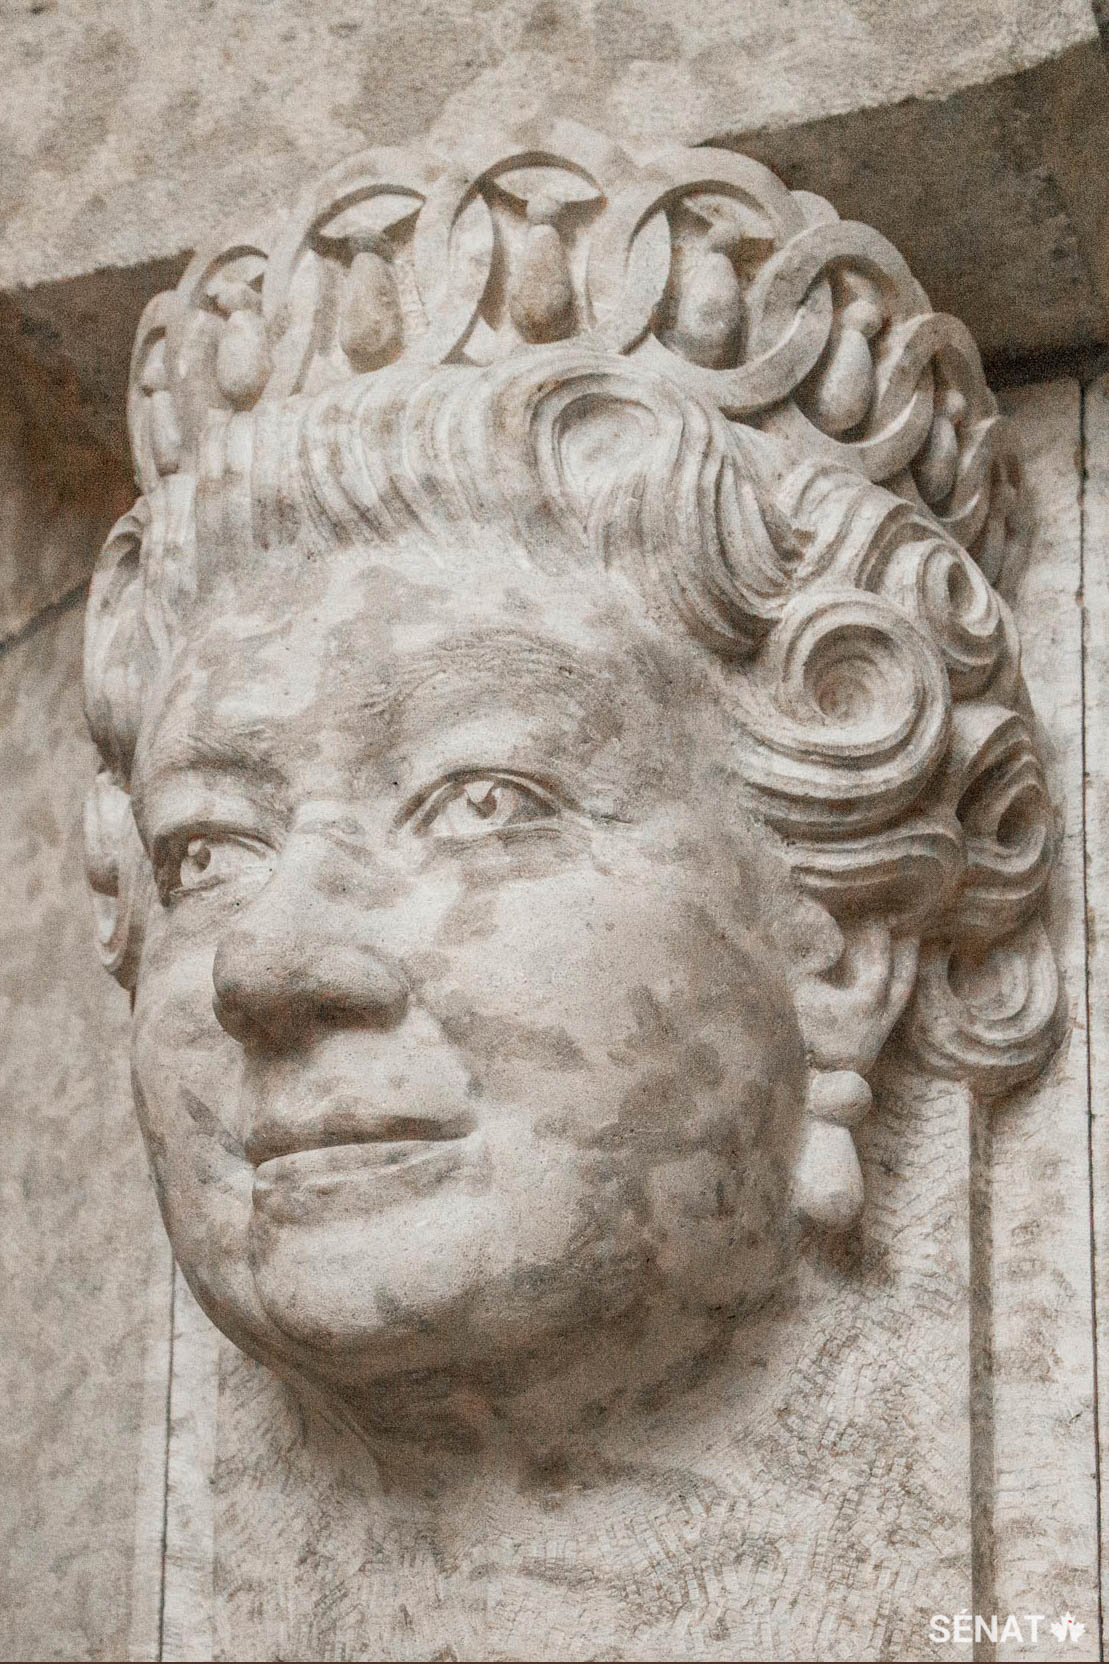 Cette sculpture de la tête de la reine Elizabeth II a été ajoutée, en 2010, parmi cinq autres sculptures de ses prédécesseurs.